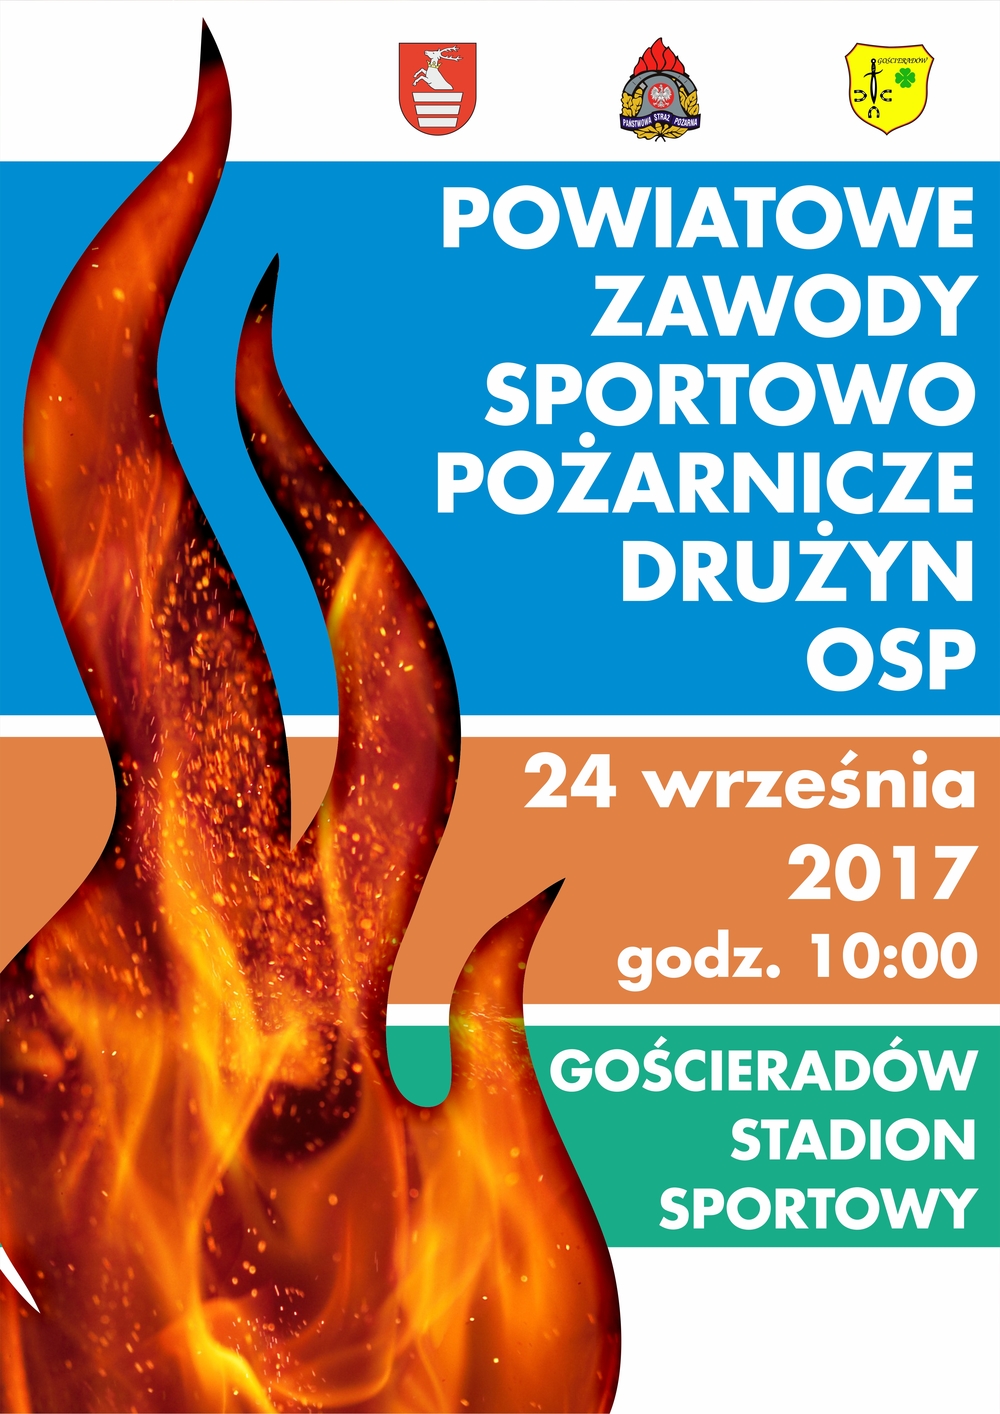 Powiatowe zawody sportowo pożarnicze drużyn OSP